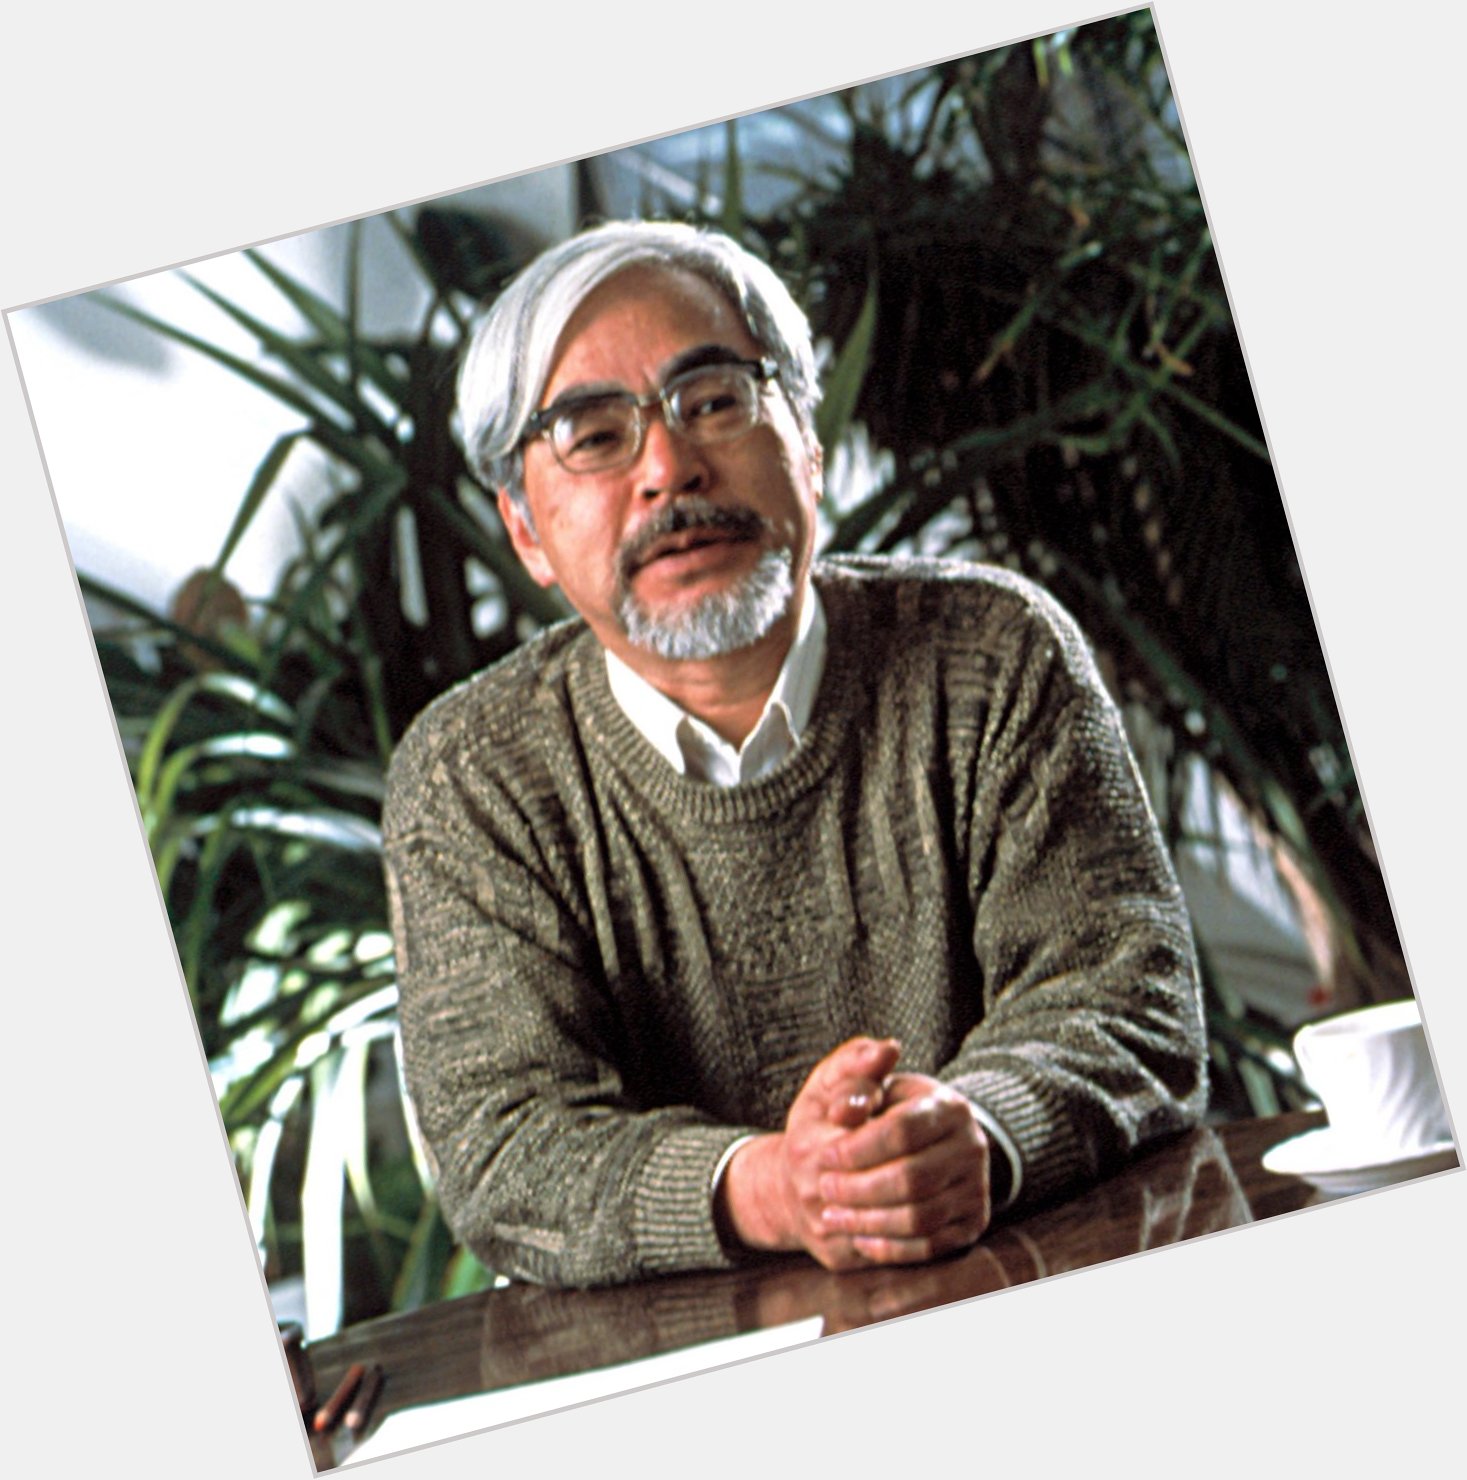 Happy birthday to the incredible Hayao Miyazaki! 